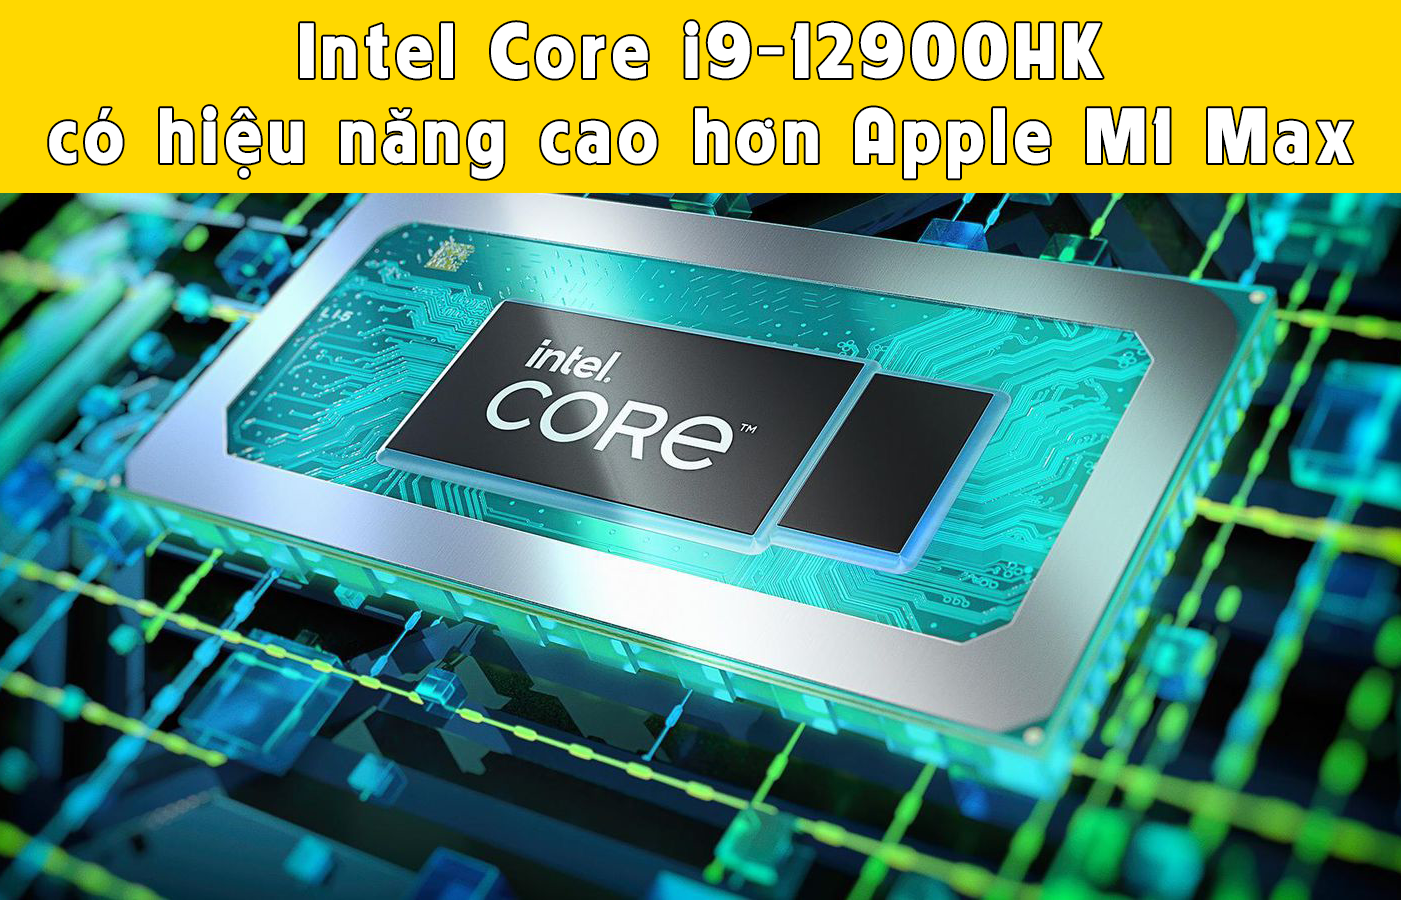 Intel Core i9-12900HK có hiệu năng cao hơn Apple M1 Max ở cùng mức tiêu thụ điện